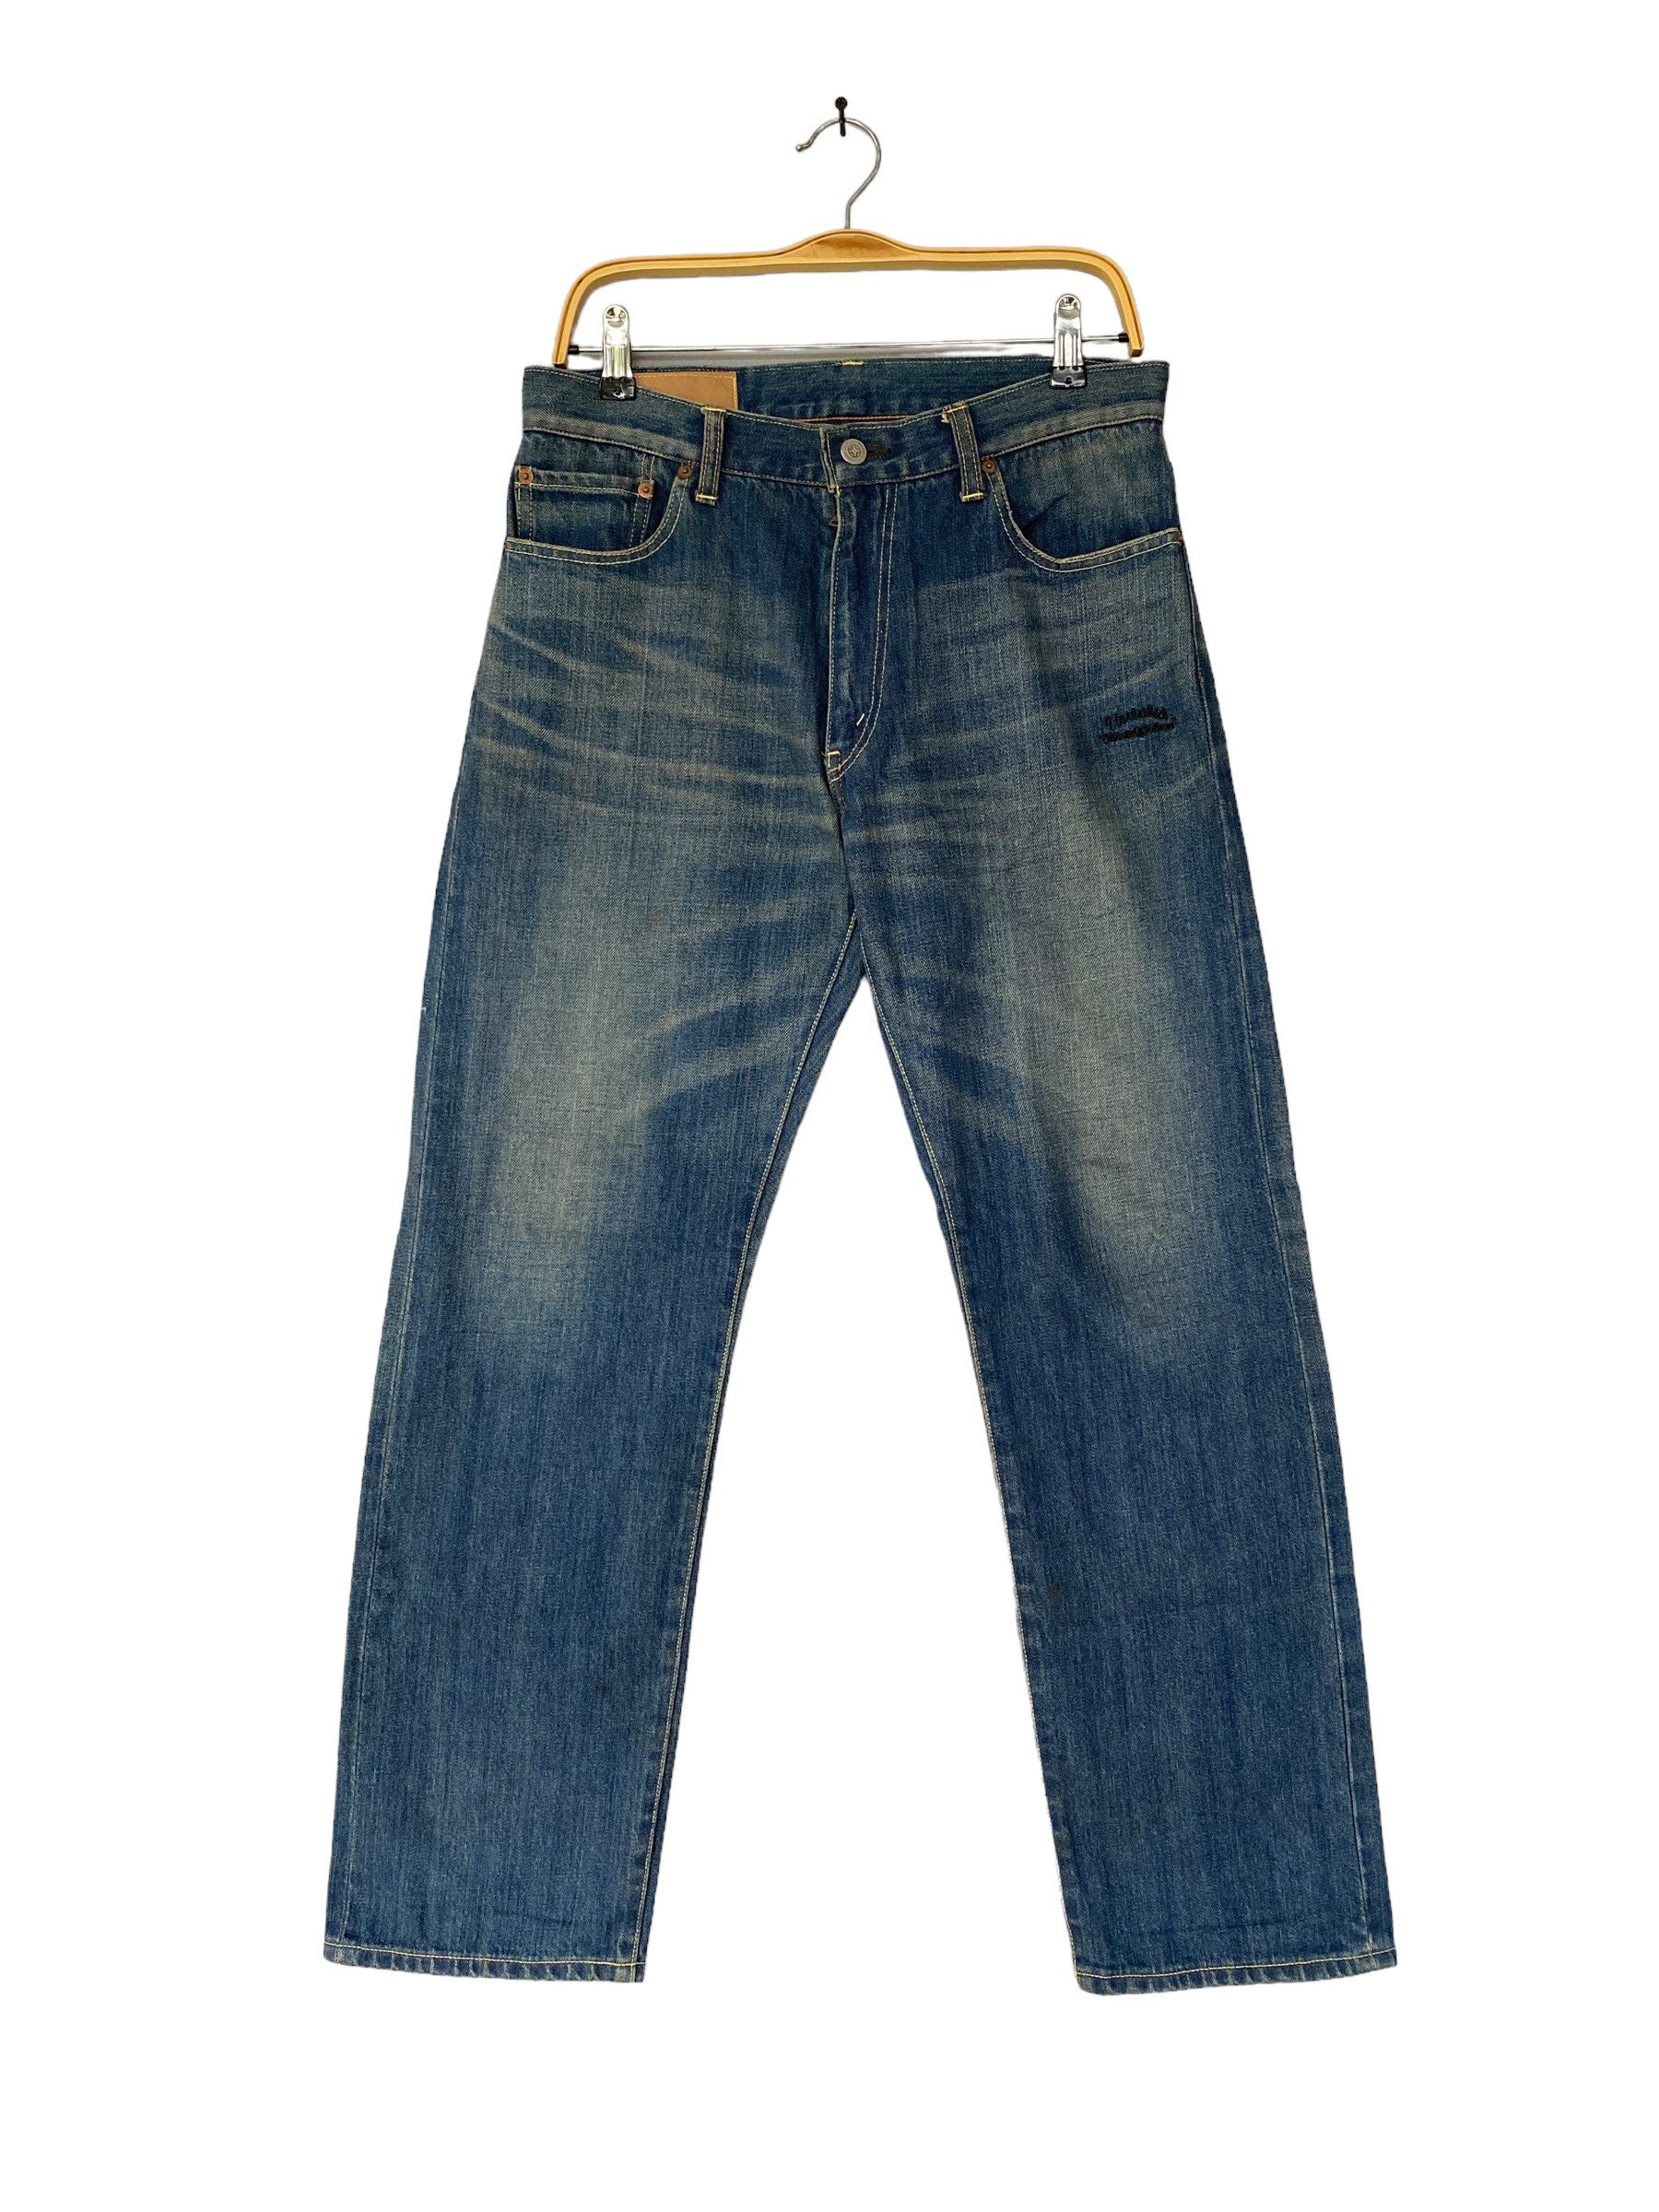 Vintage Unrivaled Selvedge Jeans Ligh Blue Japanese Brand Vintage Style ...